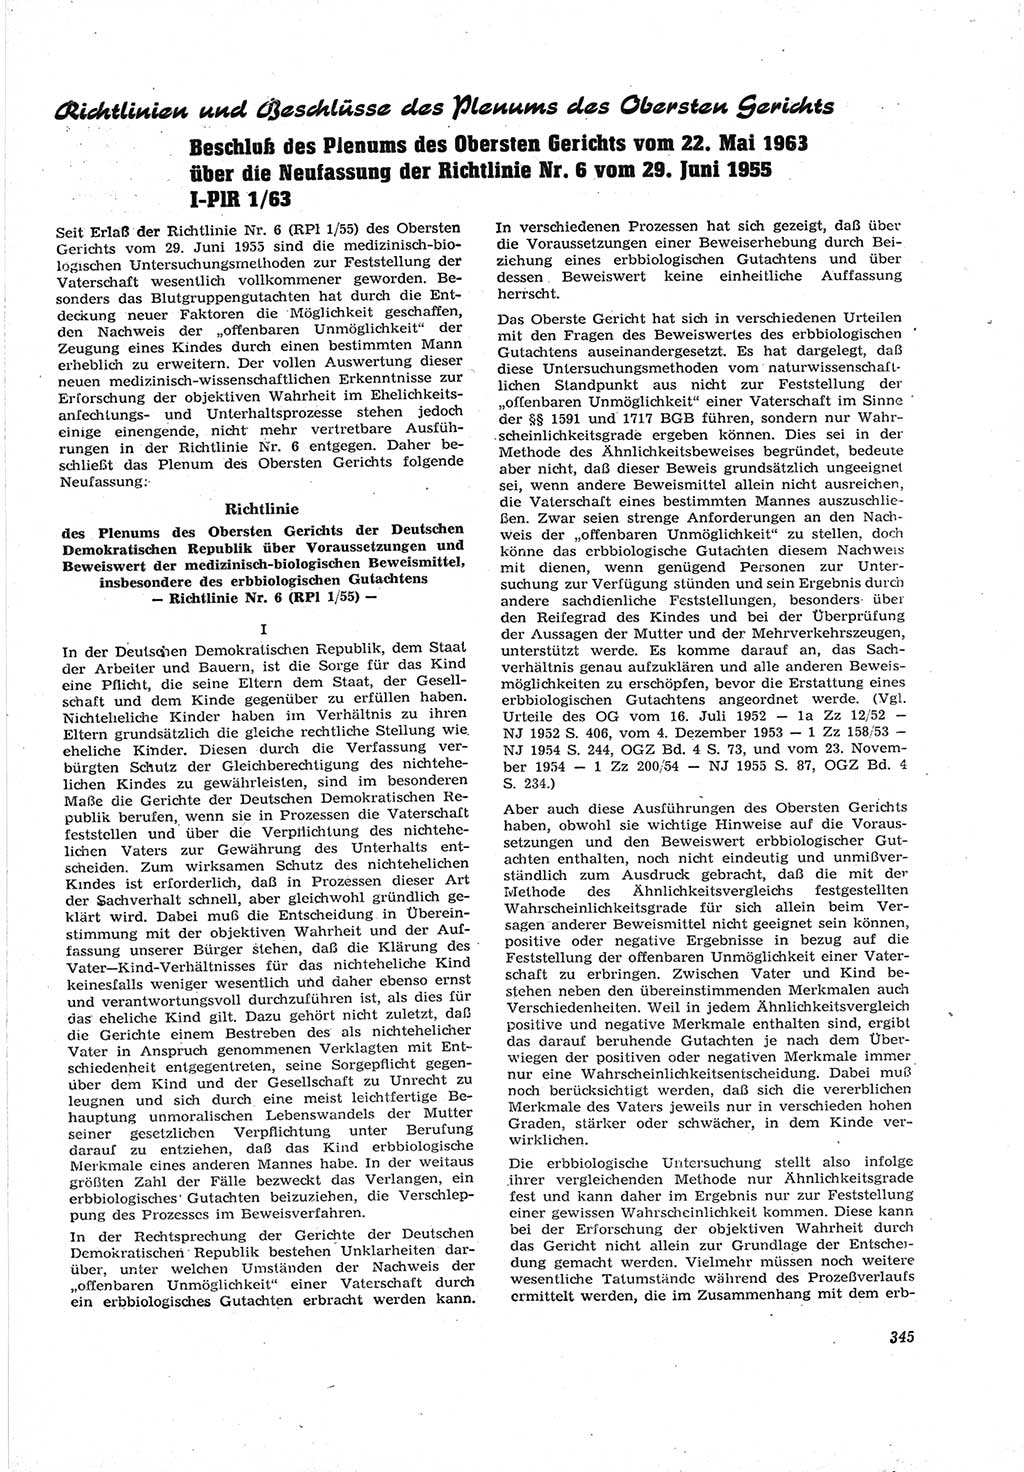 Neue Justiz (NJ), Zeitschrift für Recht und Rechtswissenschaft [Deutsche Demokratische Republik (DDR)], 17. Jahrgang 1963, Seite 345 (NJ DDR 1963, S. 345)